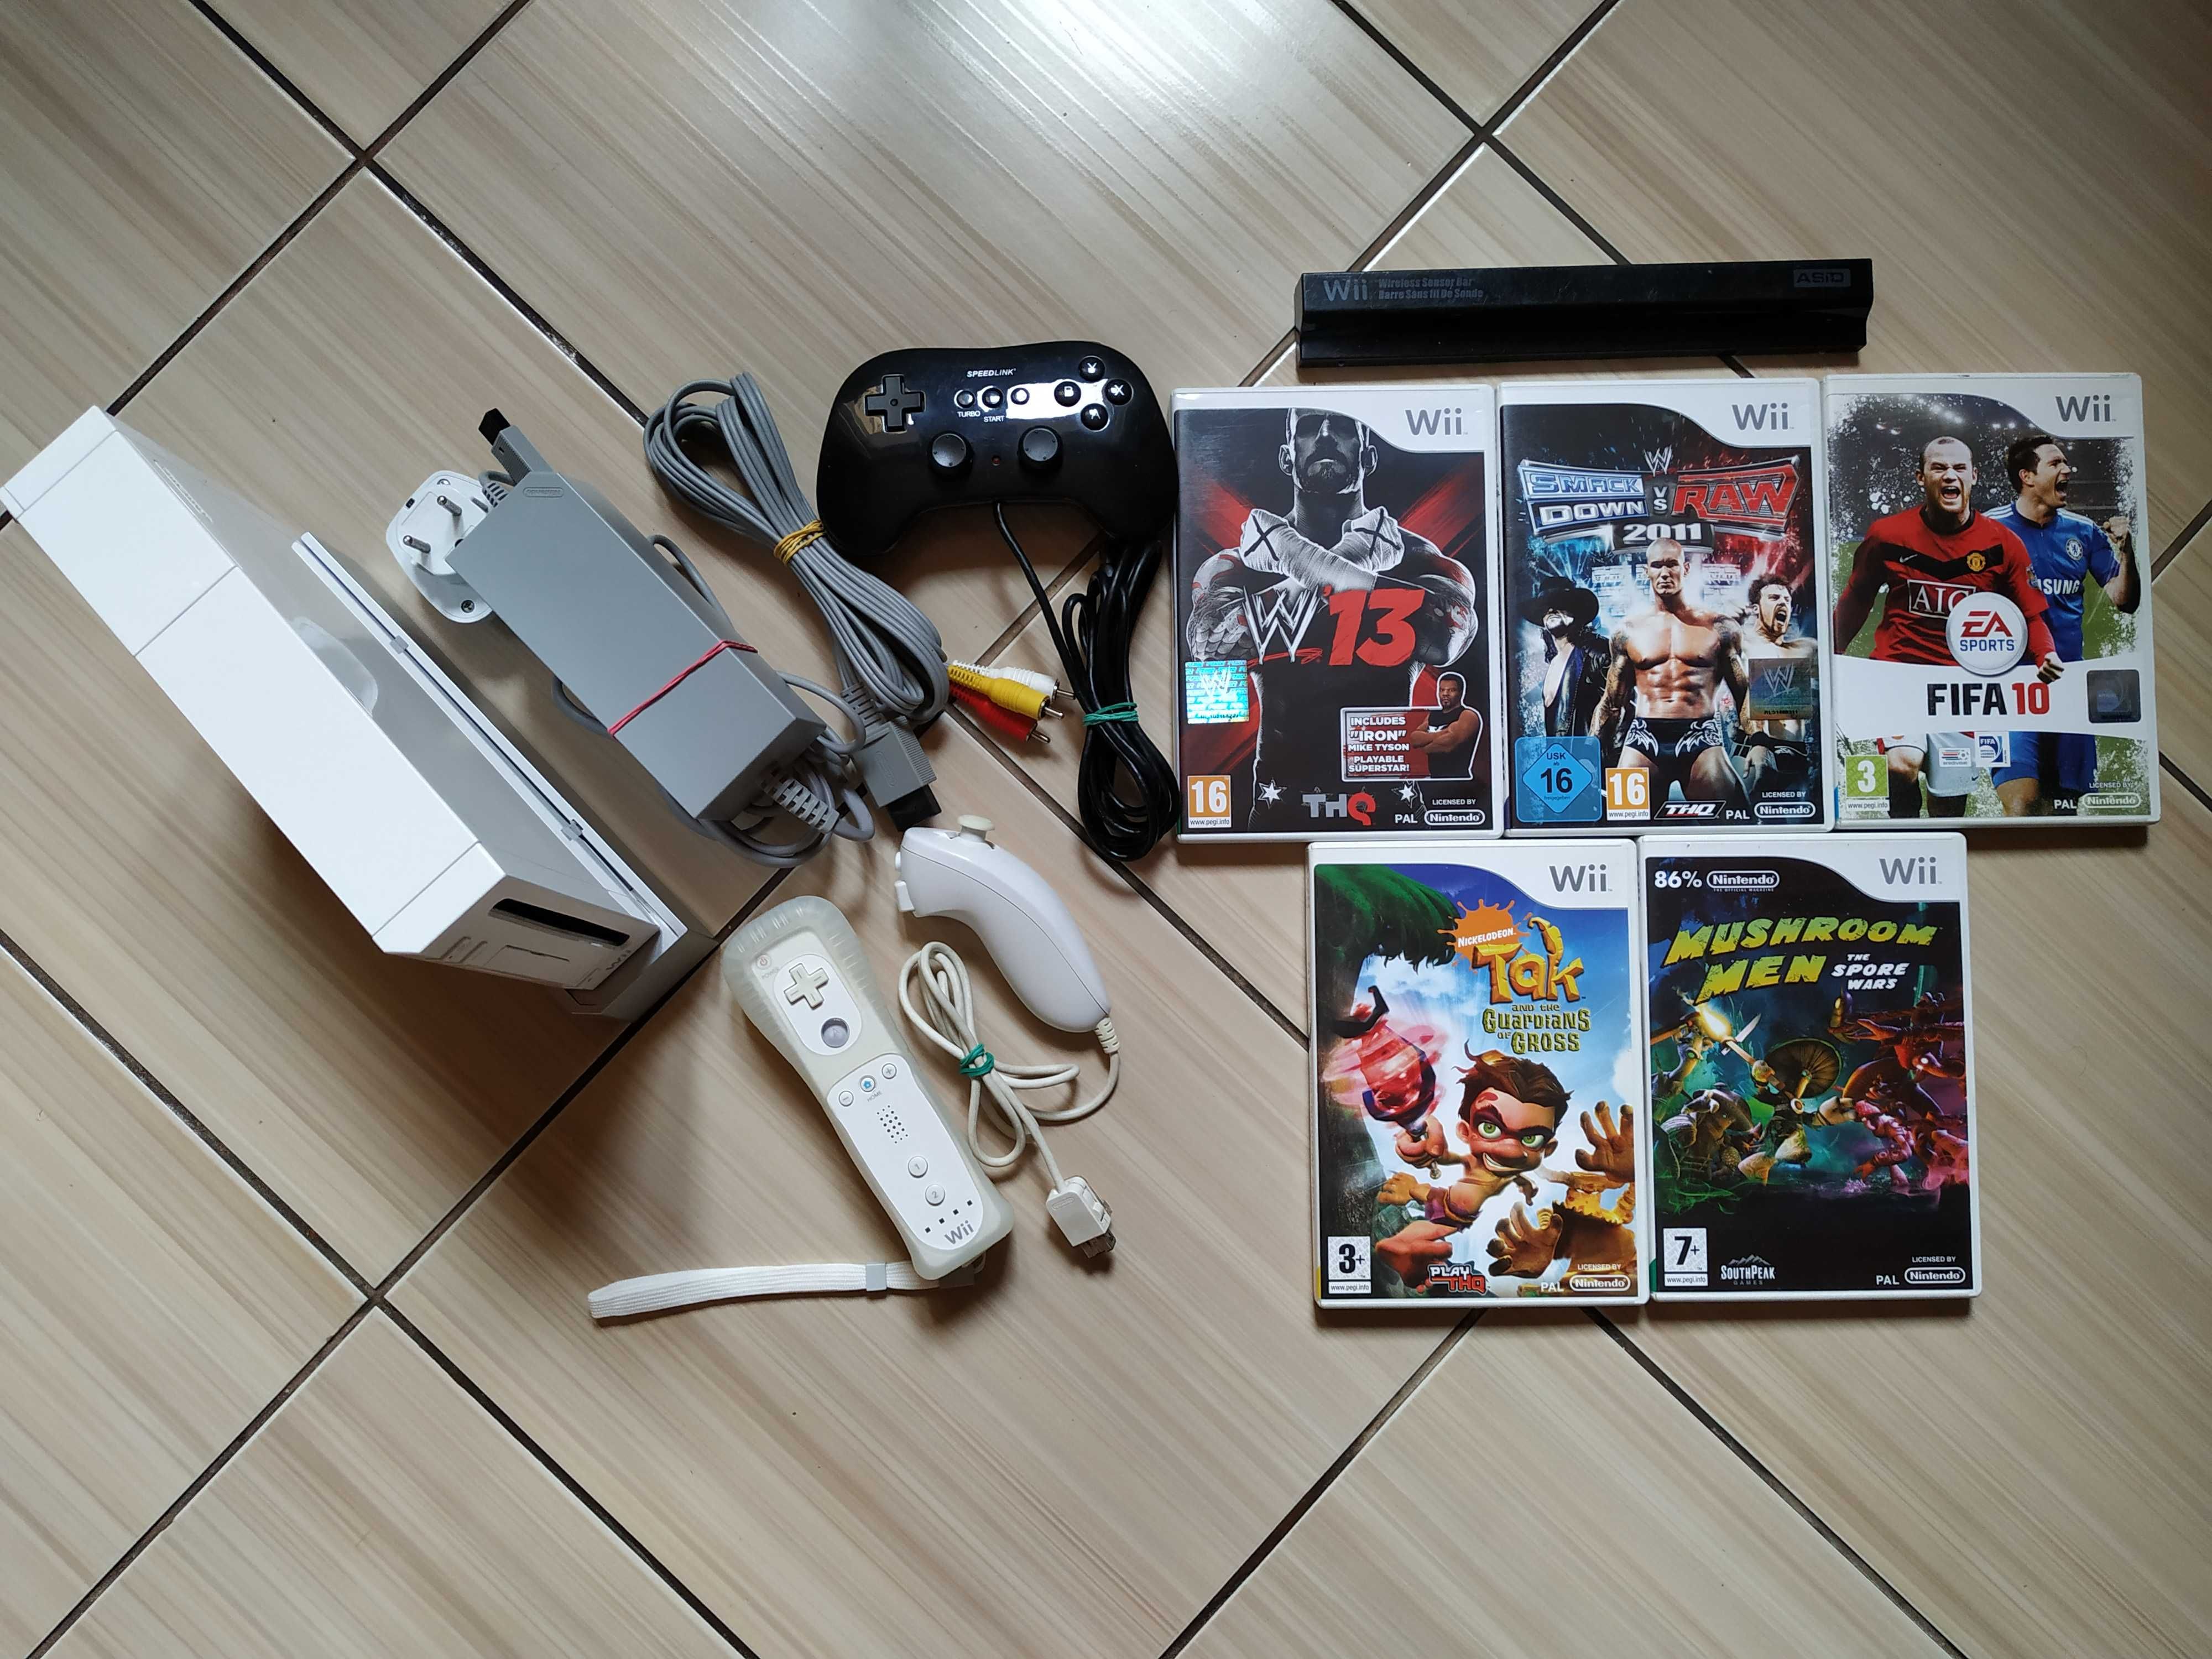 Nintendo Wii completa cu toate accesoriile originale si jocuri incluse